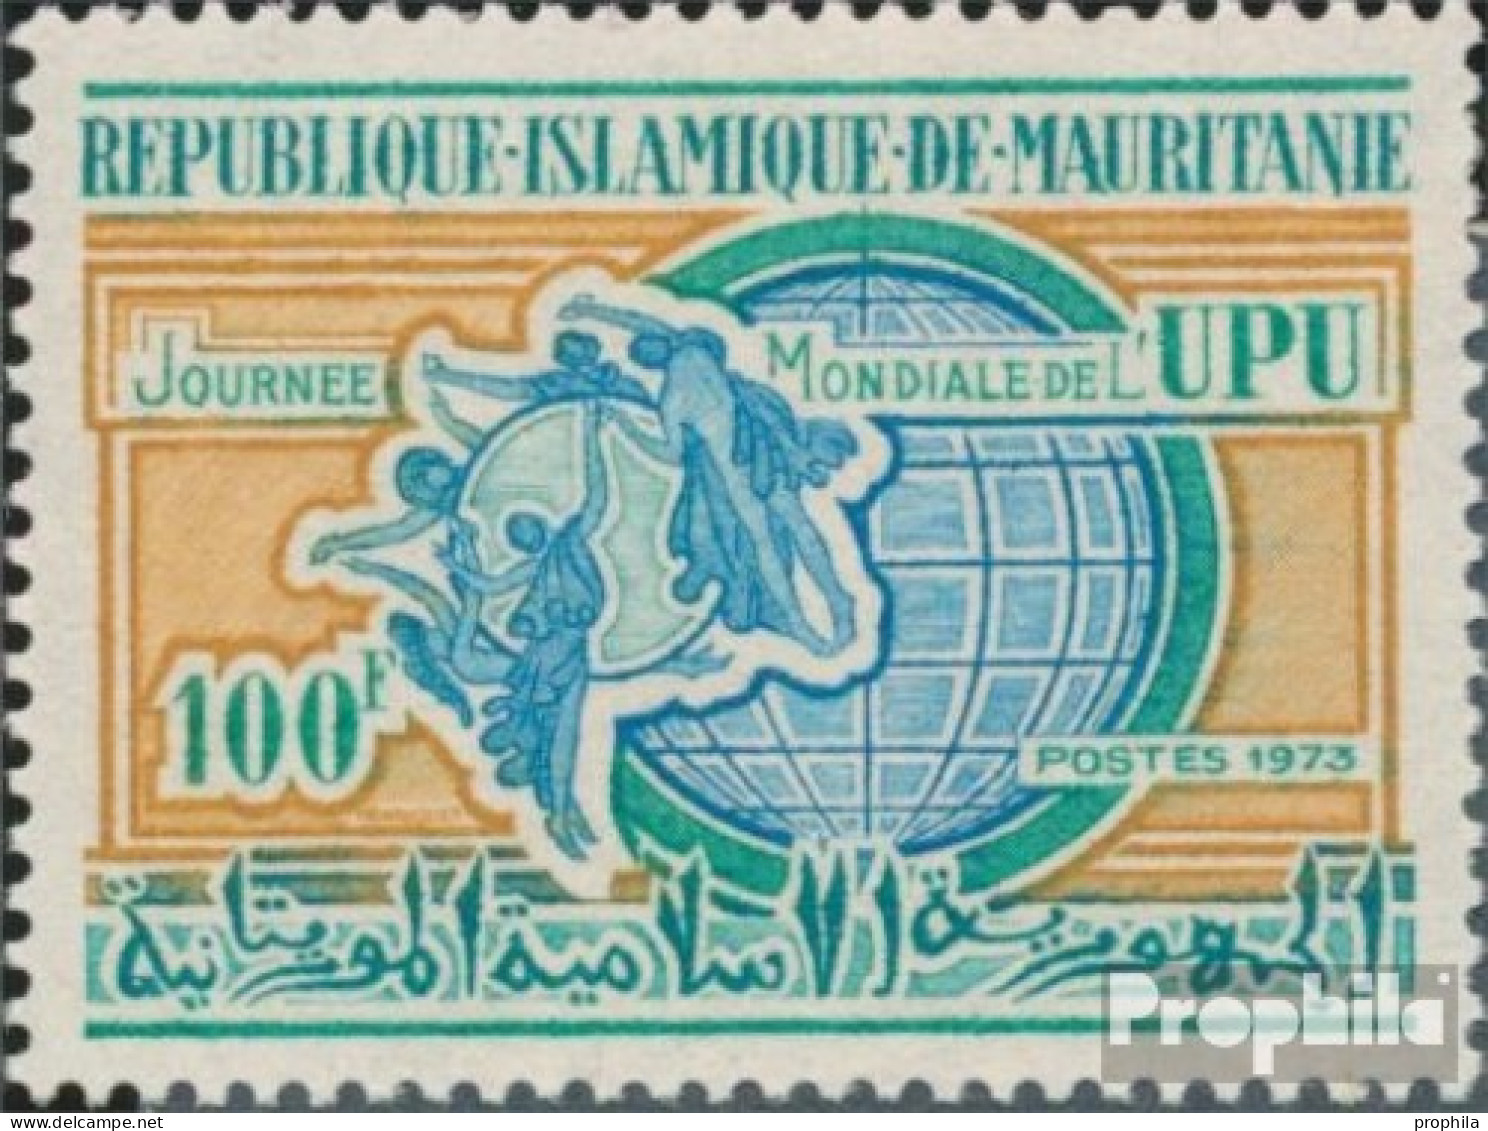 Mauretanien 455 (kompl.Ausg.) Postfrisch 1973 Posttag - Mauritania (1960-...)